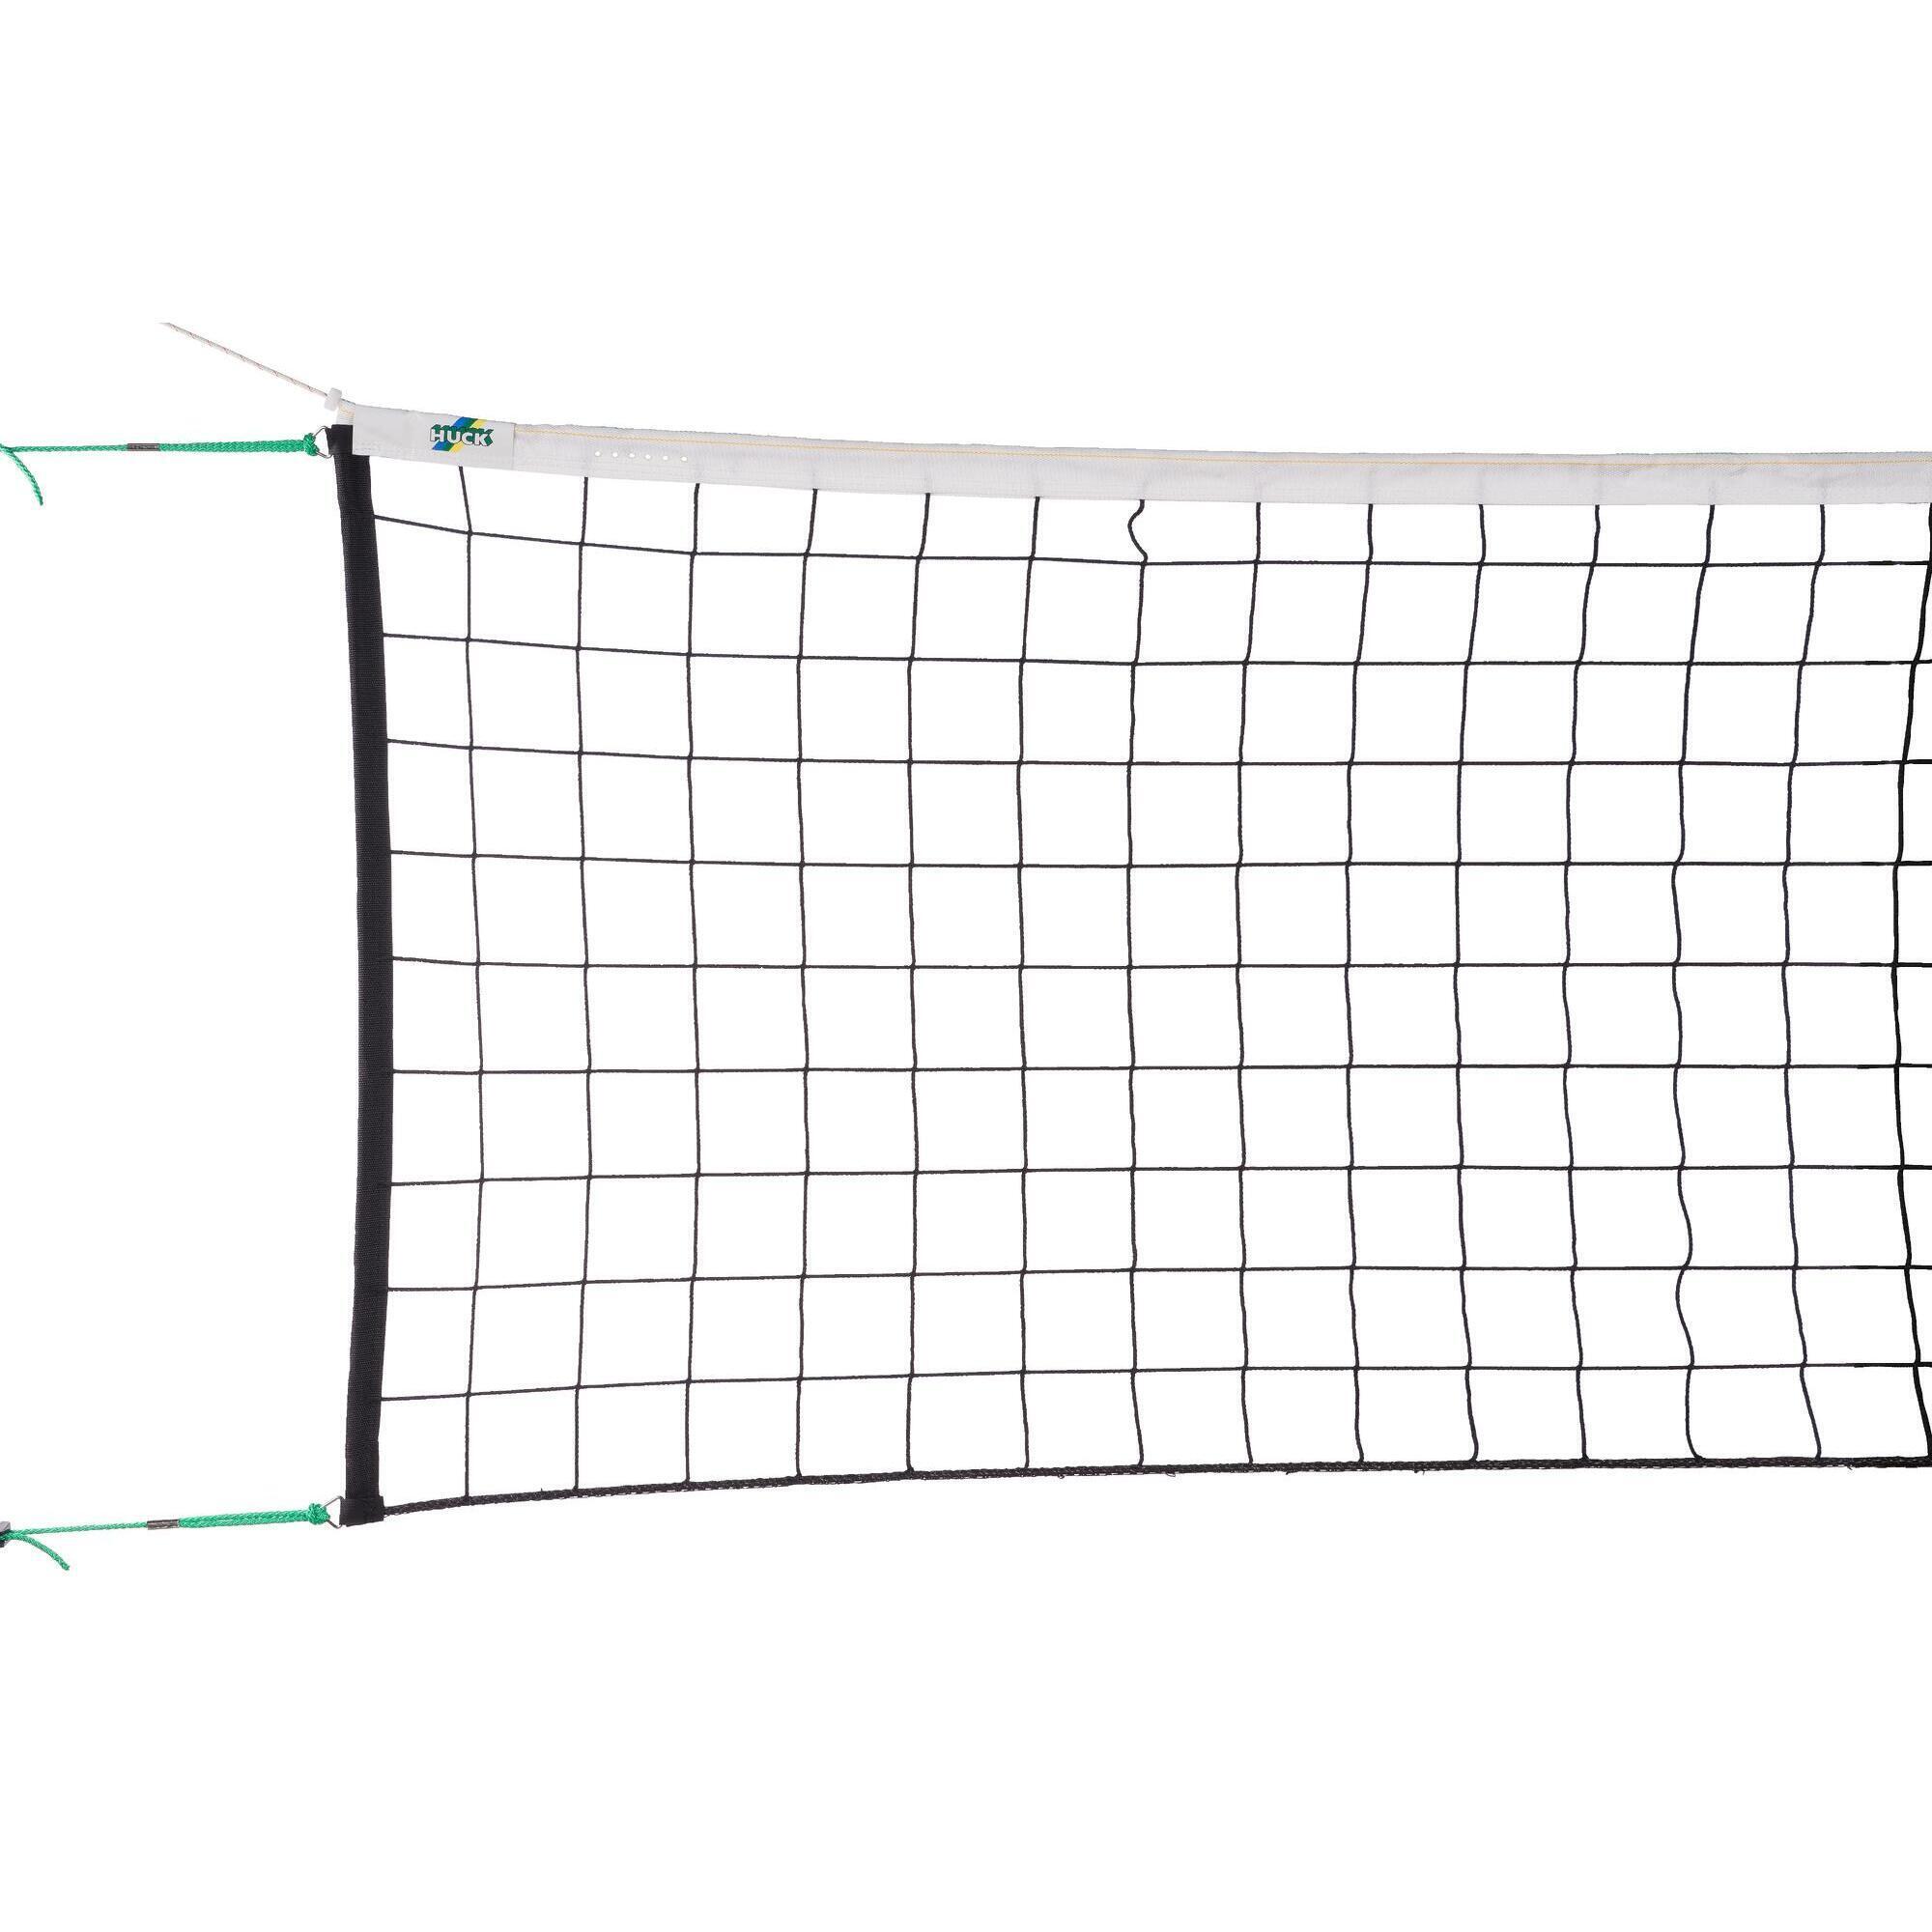 Турнирная сетка Huck по волейболу DVV, красочный 2 шт гоночный флаг оборудование для рефери по волейболу